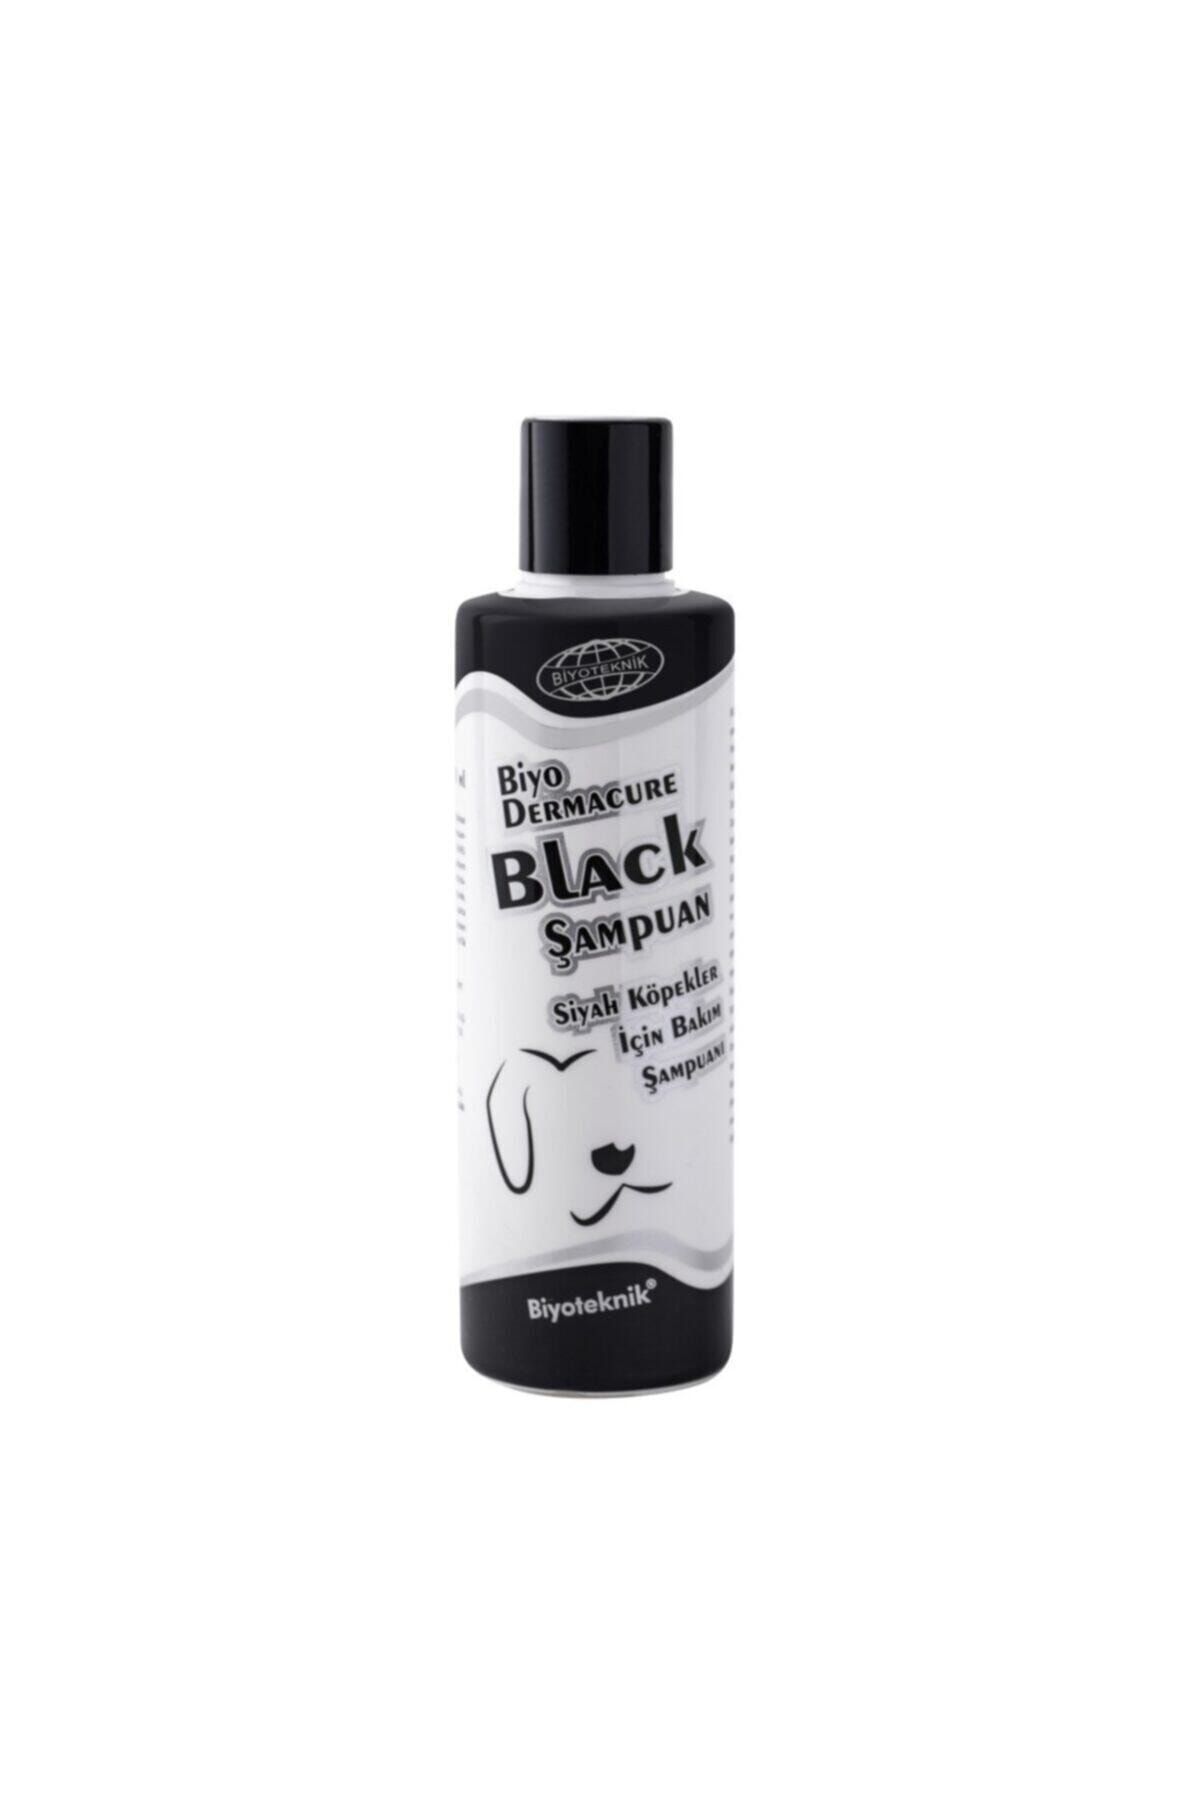 Biyoteknik Biyo-dermacure Black Siyah Köpekler Için Bakım Şampuanı 250 ml